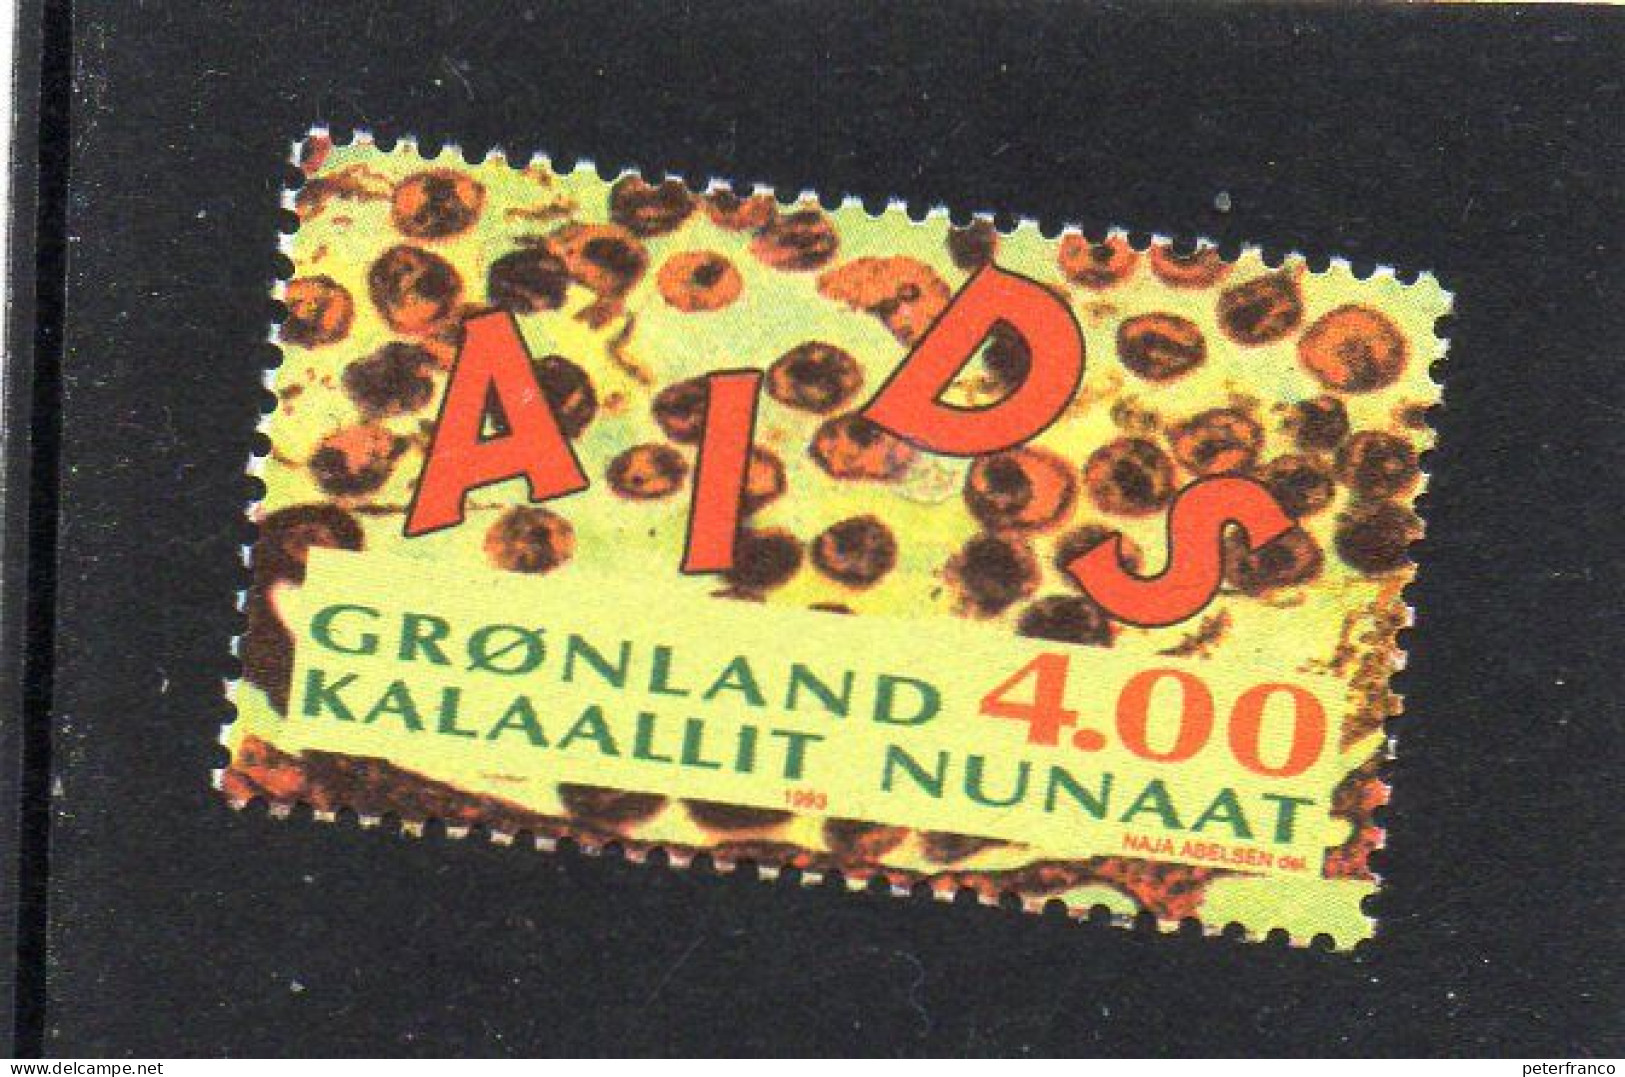 1993 Groenlandia - Lotta Contro L'AIDS - Nuovi